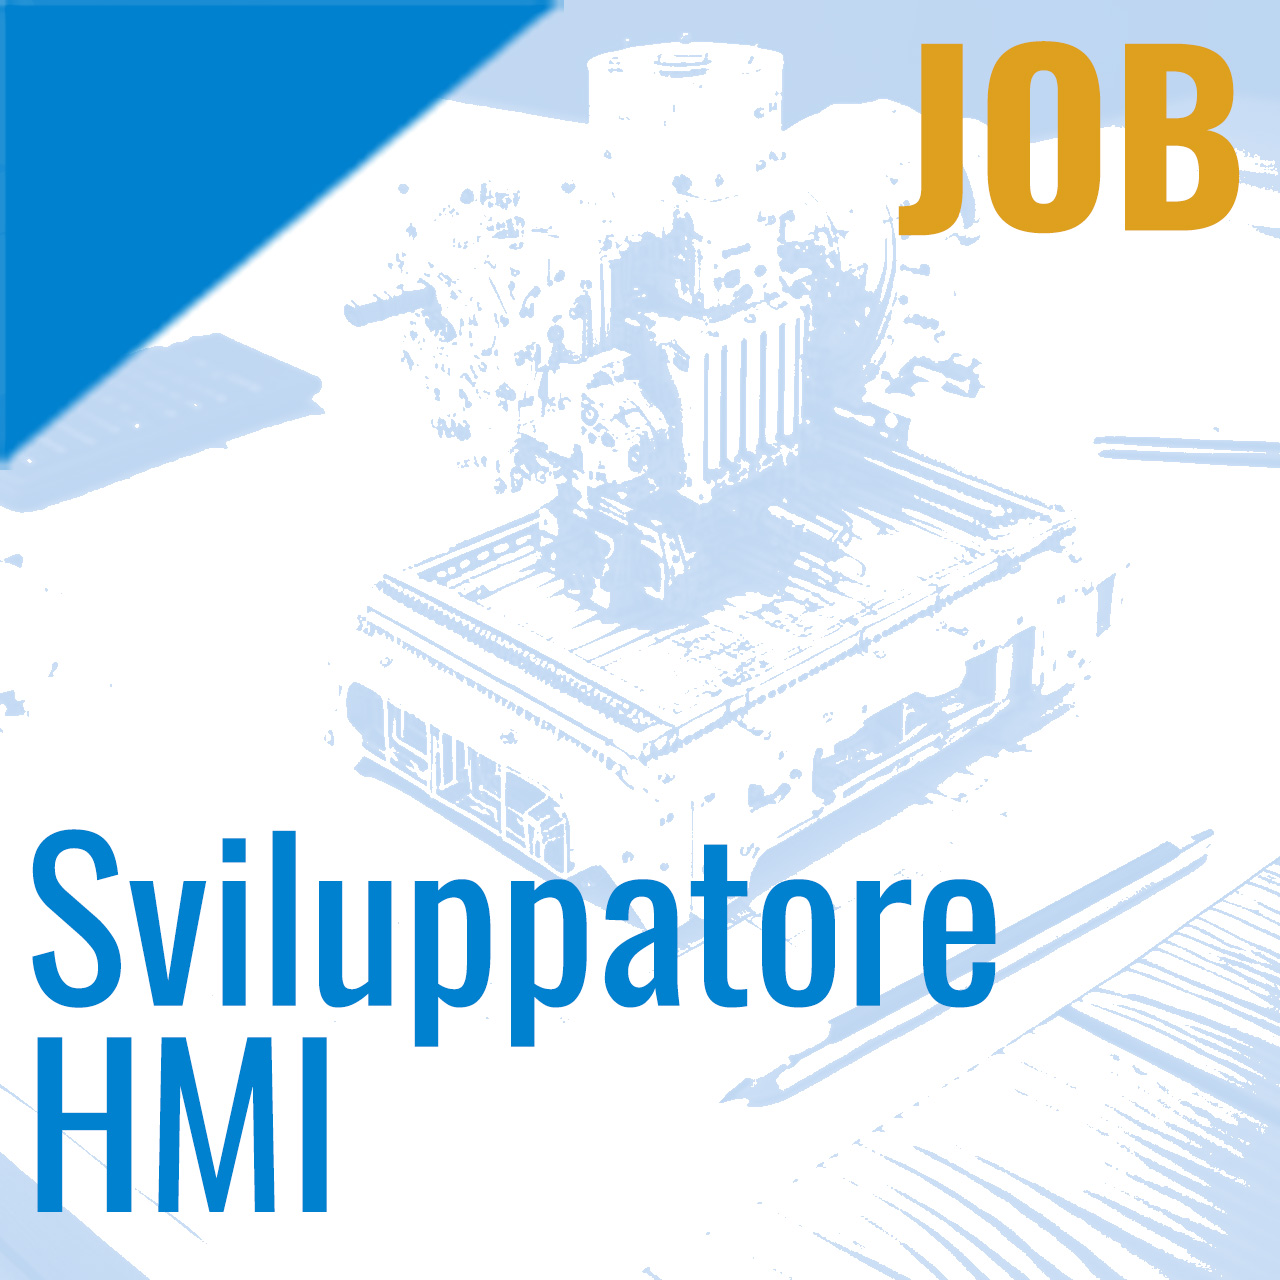 Offerta di lavoro: Sviluppatore HMI